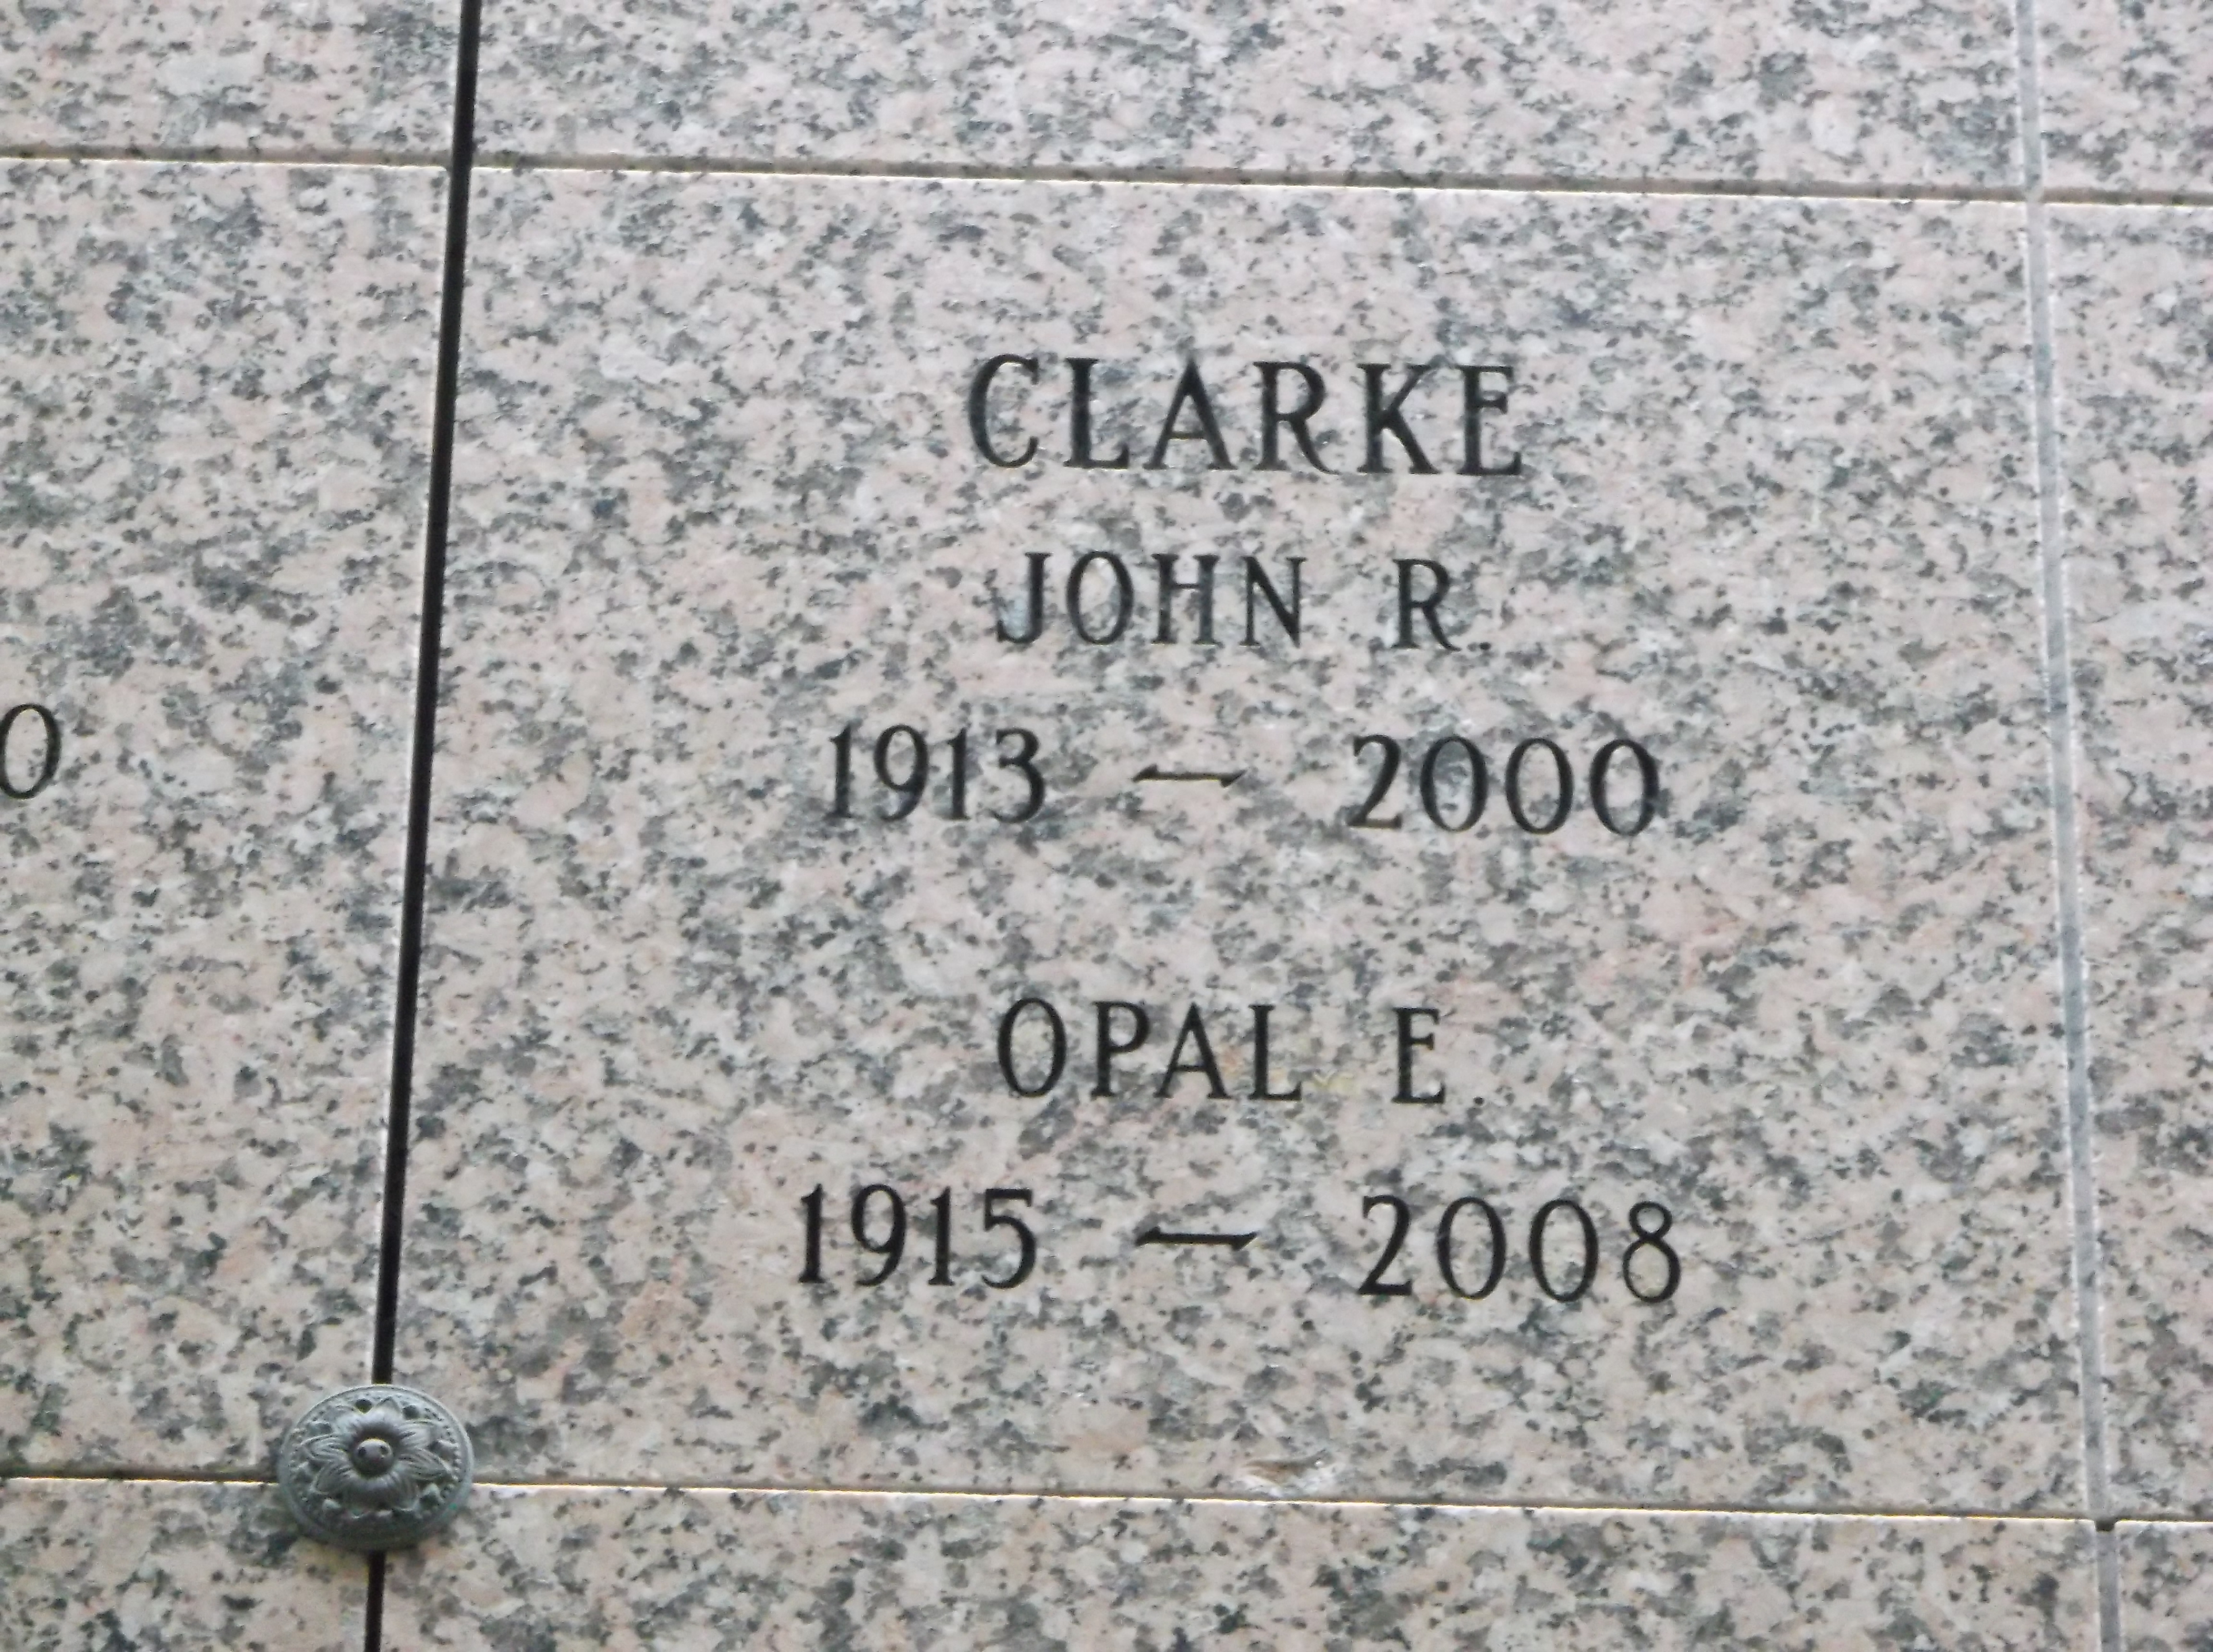 Opal E Clarke